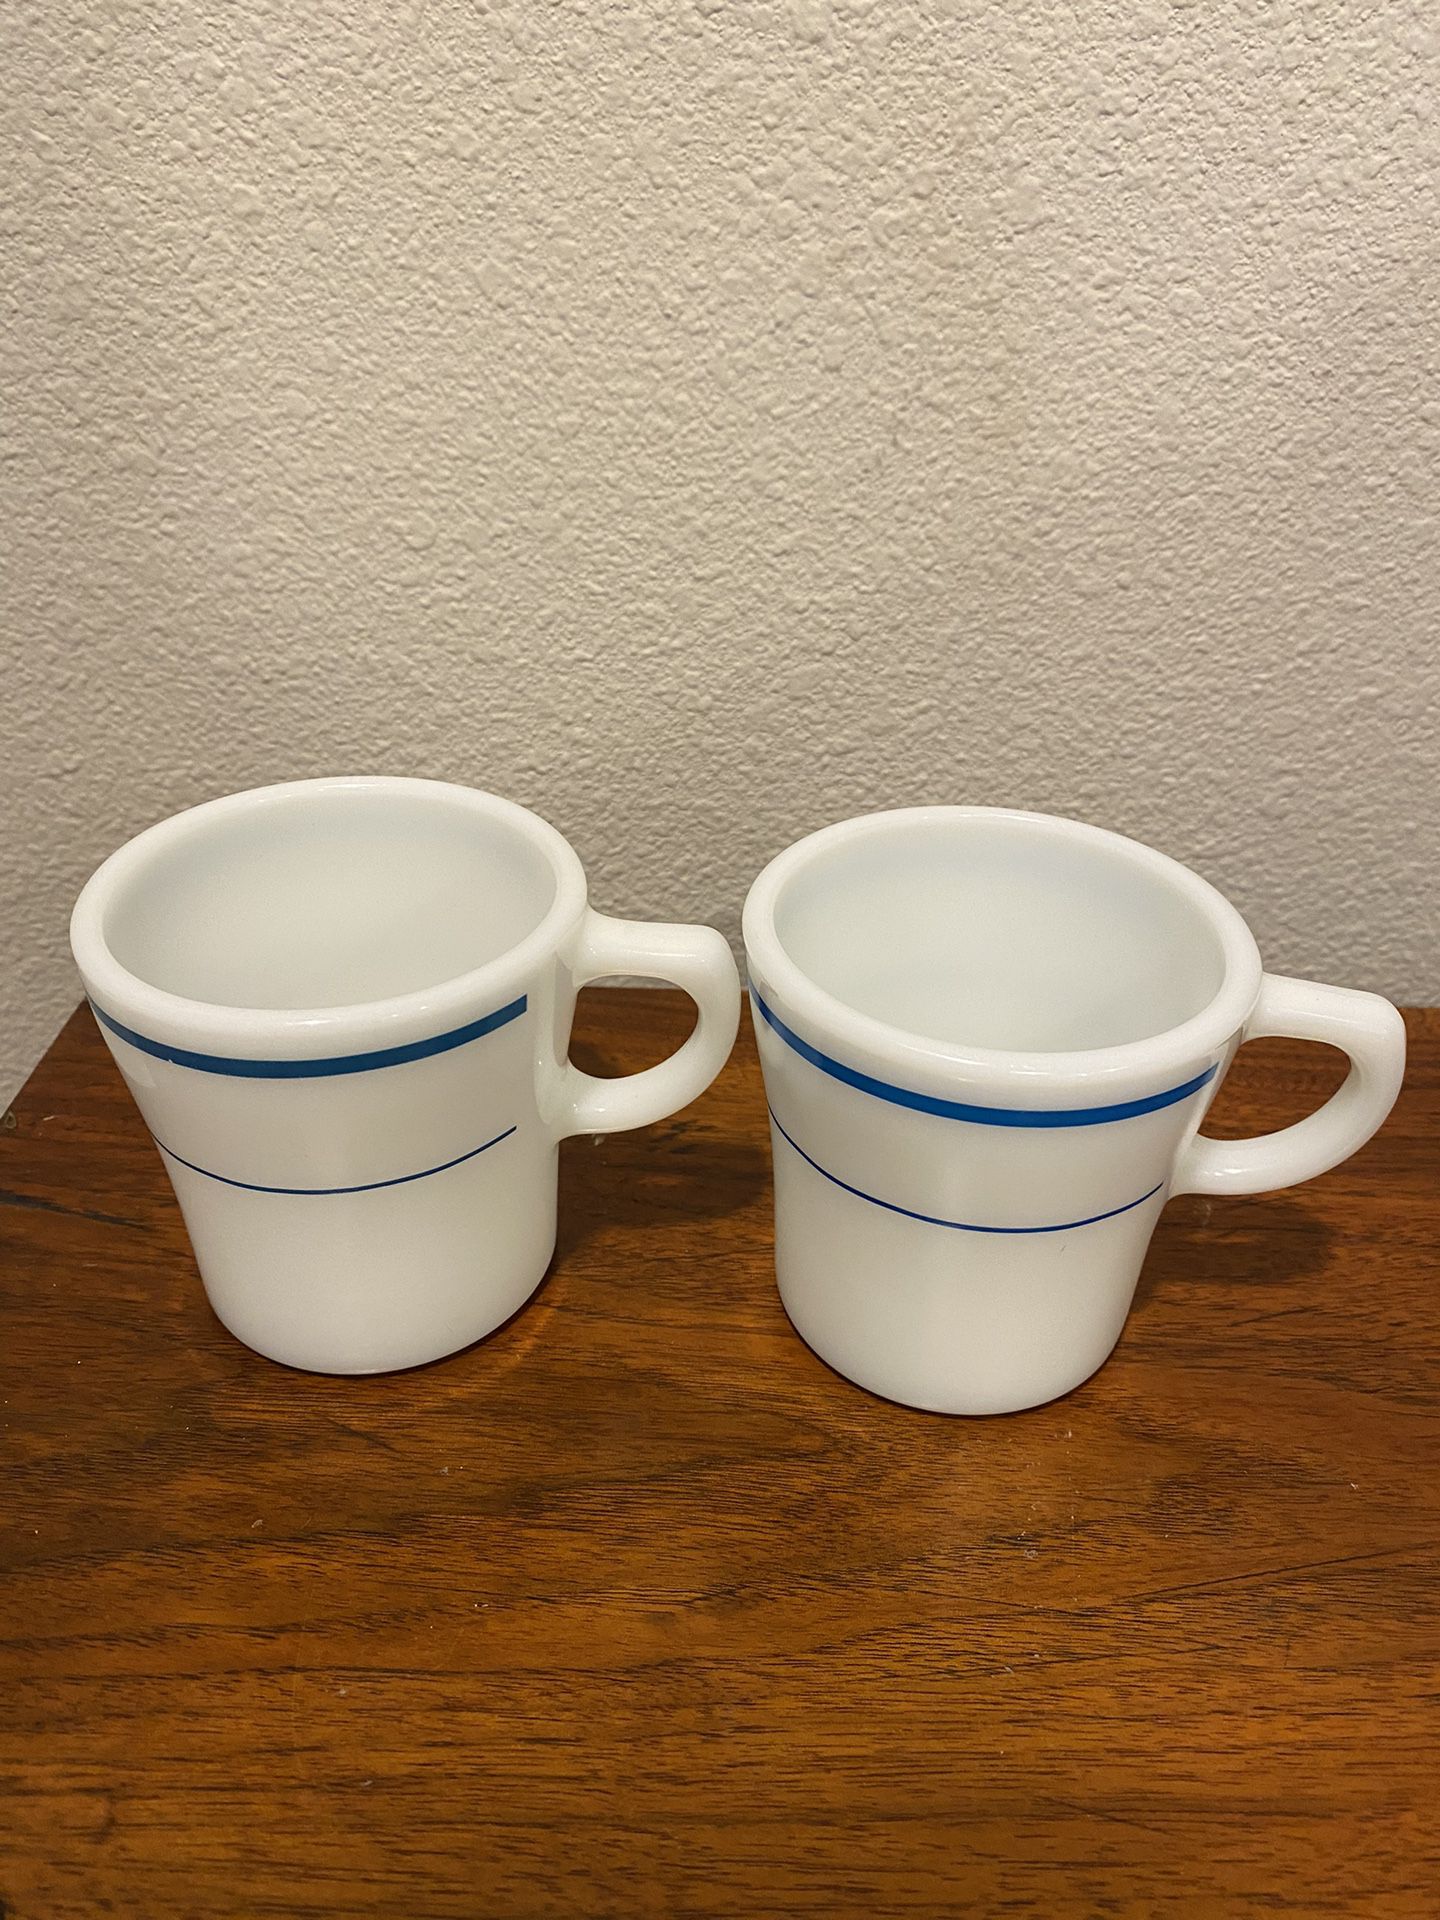 2 Vintage Pyrex Mugs